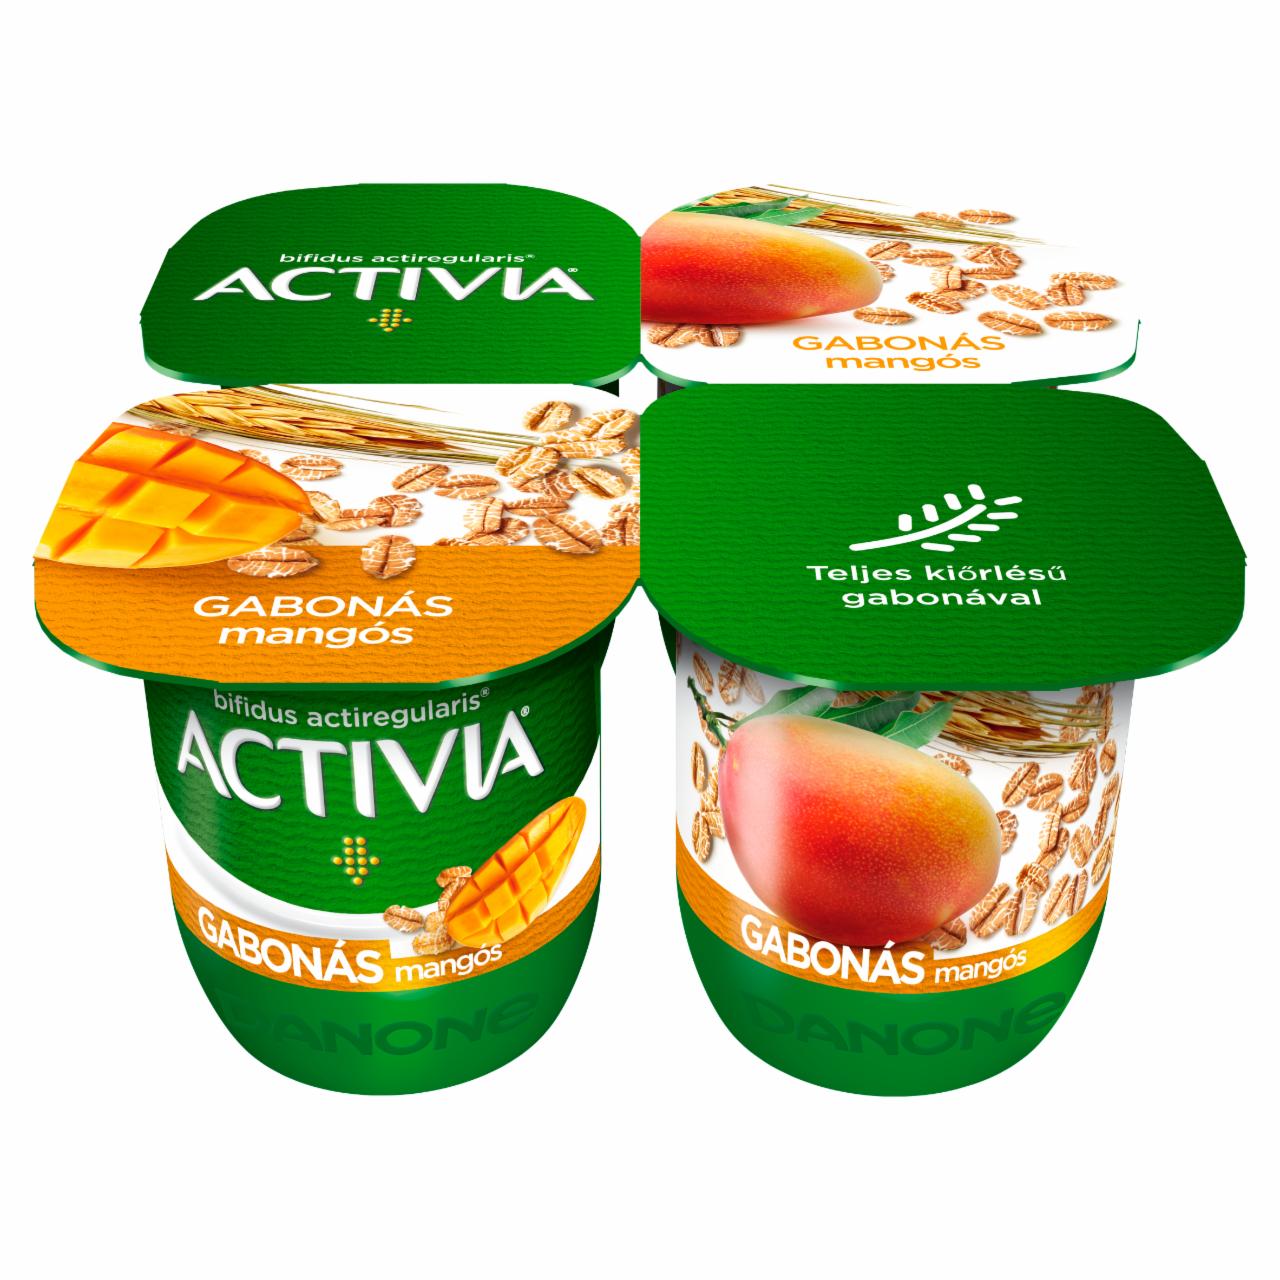 Képek - Activia élőflórás, zsírszegény mangós joghurt gabonával Danone